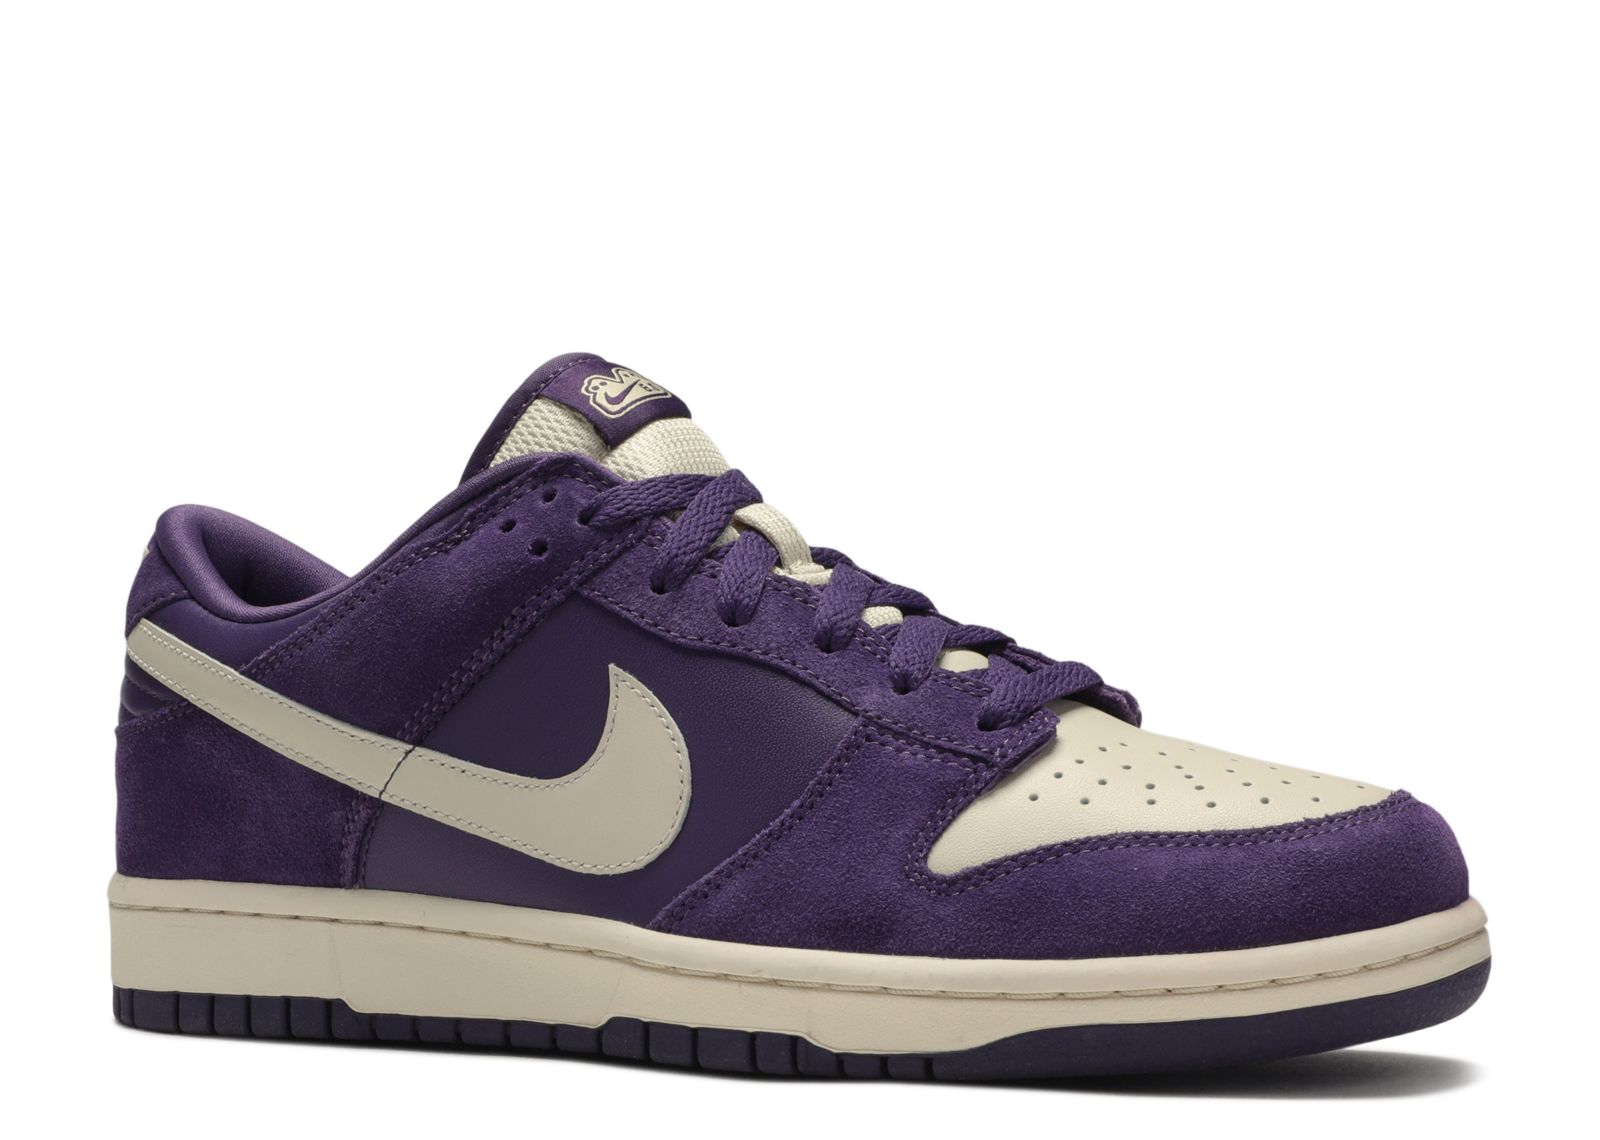 Dunk Low NKE 'Quasar Purple' - Nike - 314142 511 - quasar purple